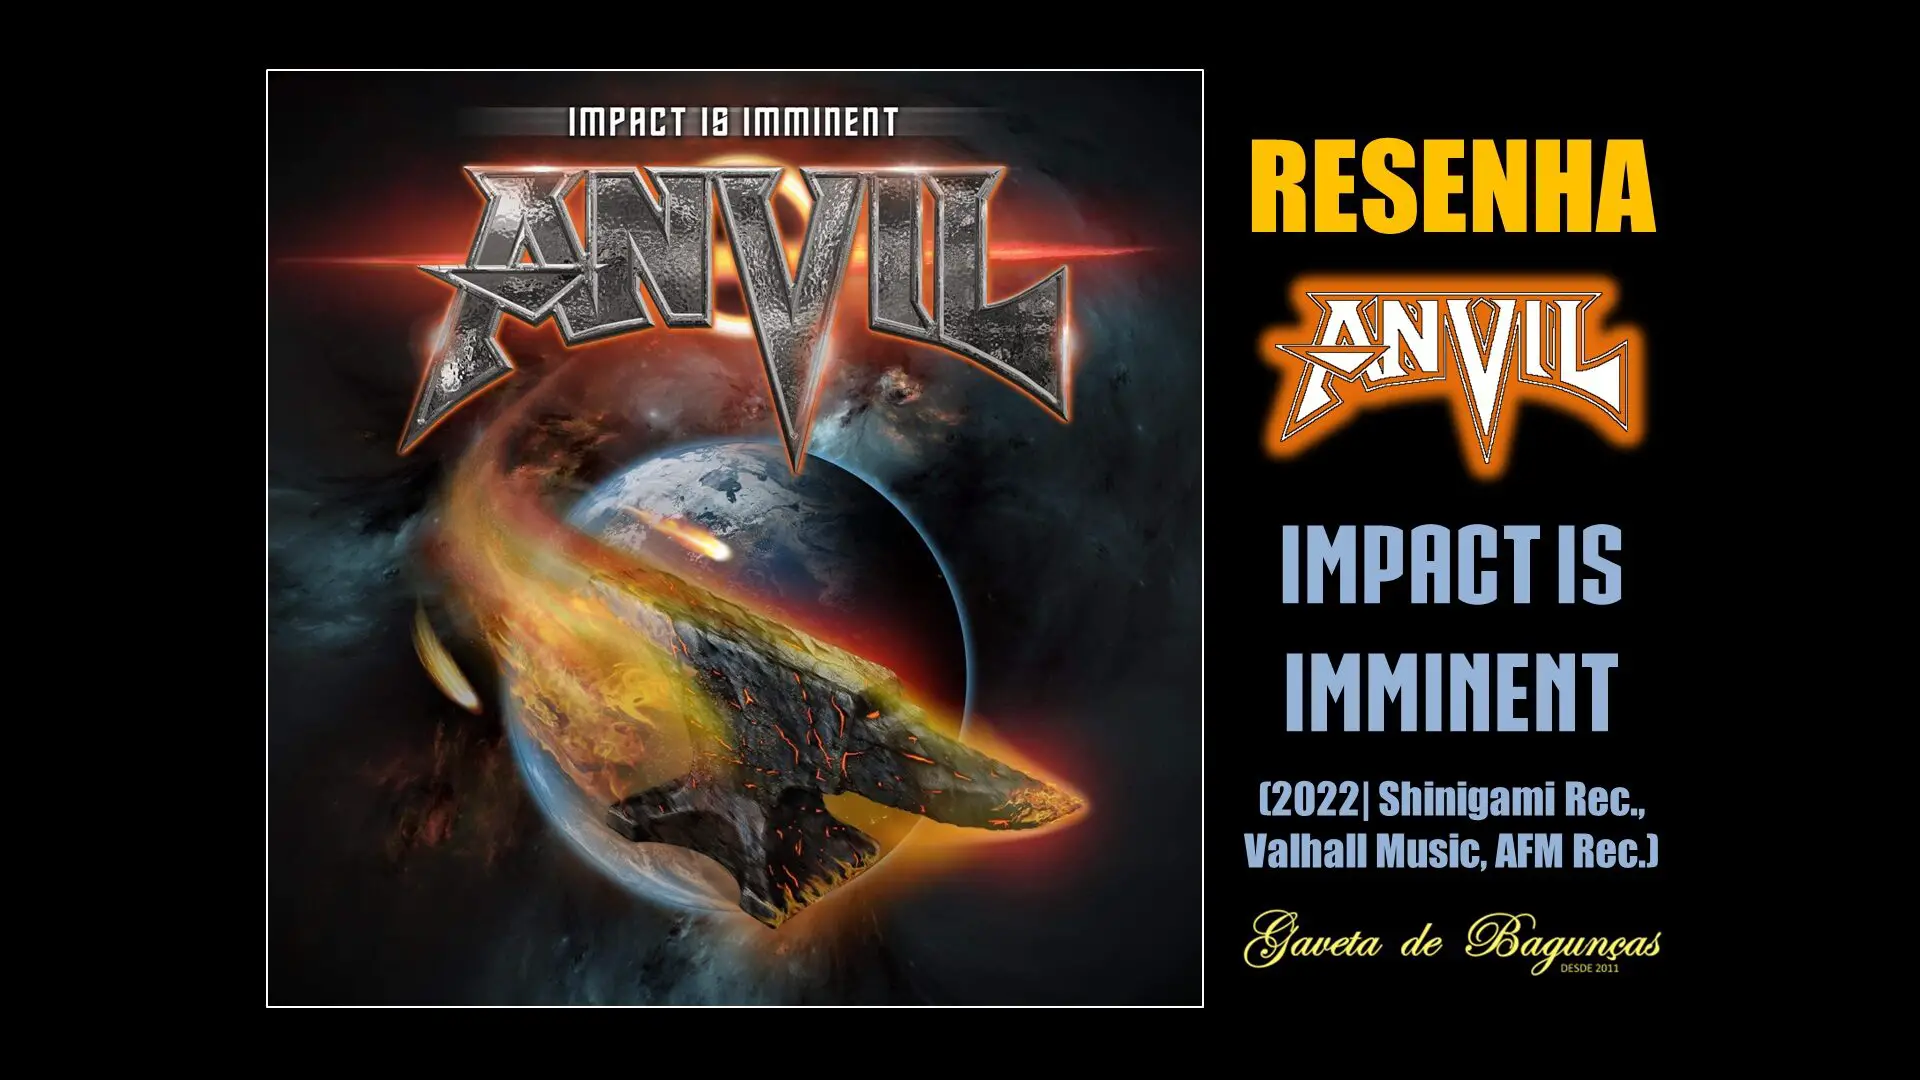 "Impact is Imminent" é o 19º álbum de estúdio da banda canadense Anvil, que se tornou cult no underground do heavy metal nas últimas duas décadas.